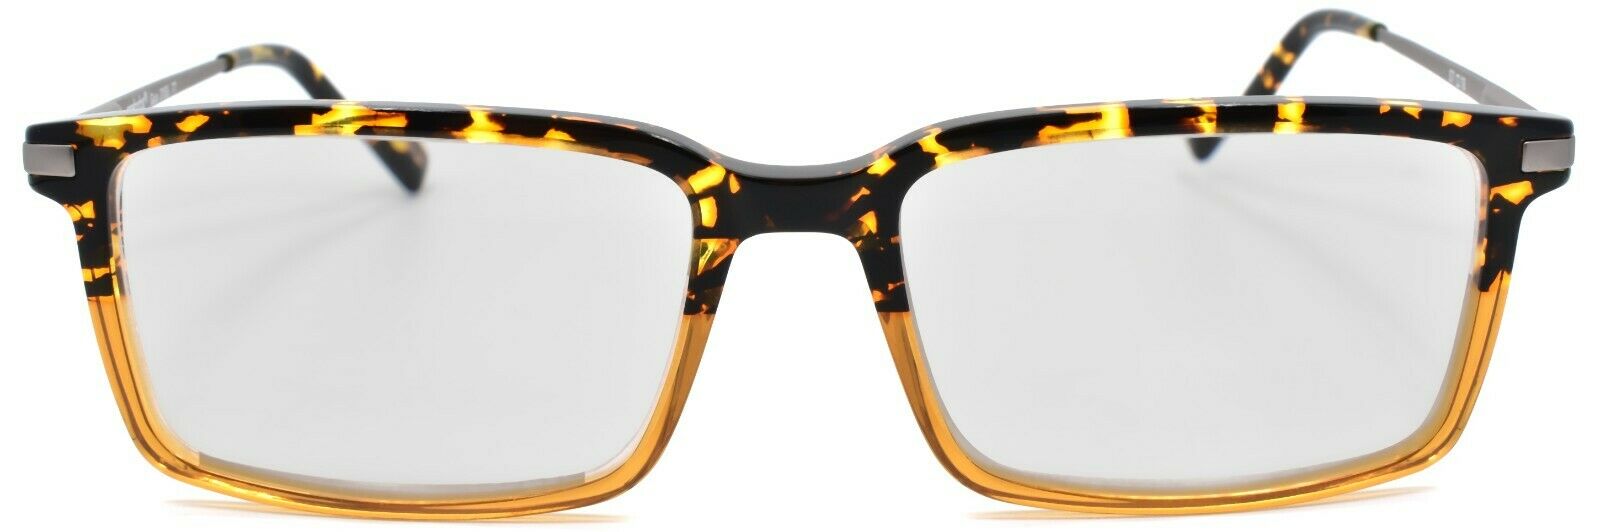 2-Eyebobs Gus 3155 77 Men's Reading Glasses Amber Tortoise / Light Gunmetal +2.25-842754172134-IKSpecs